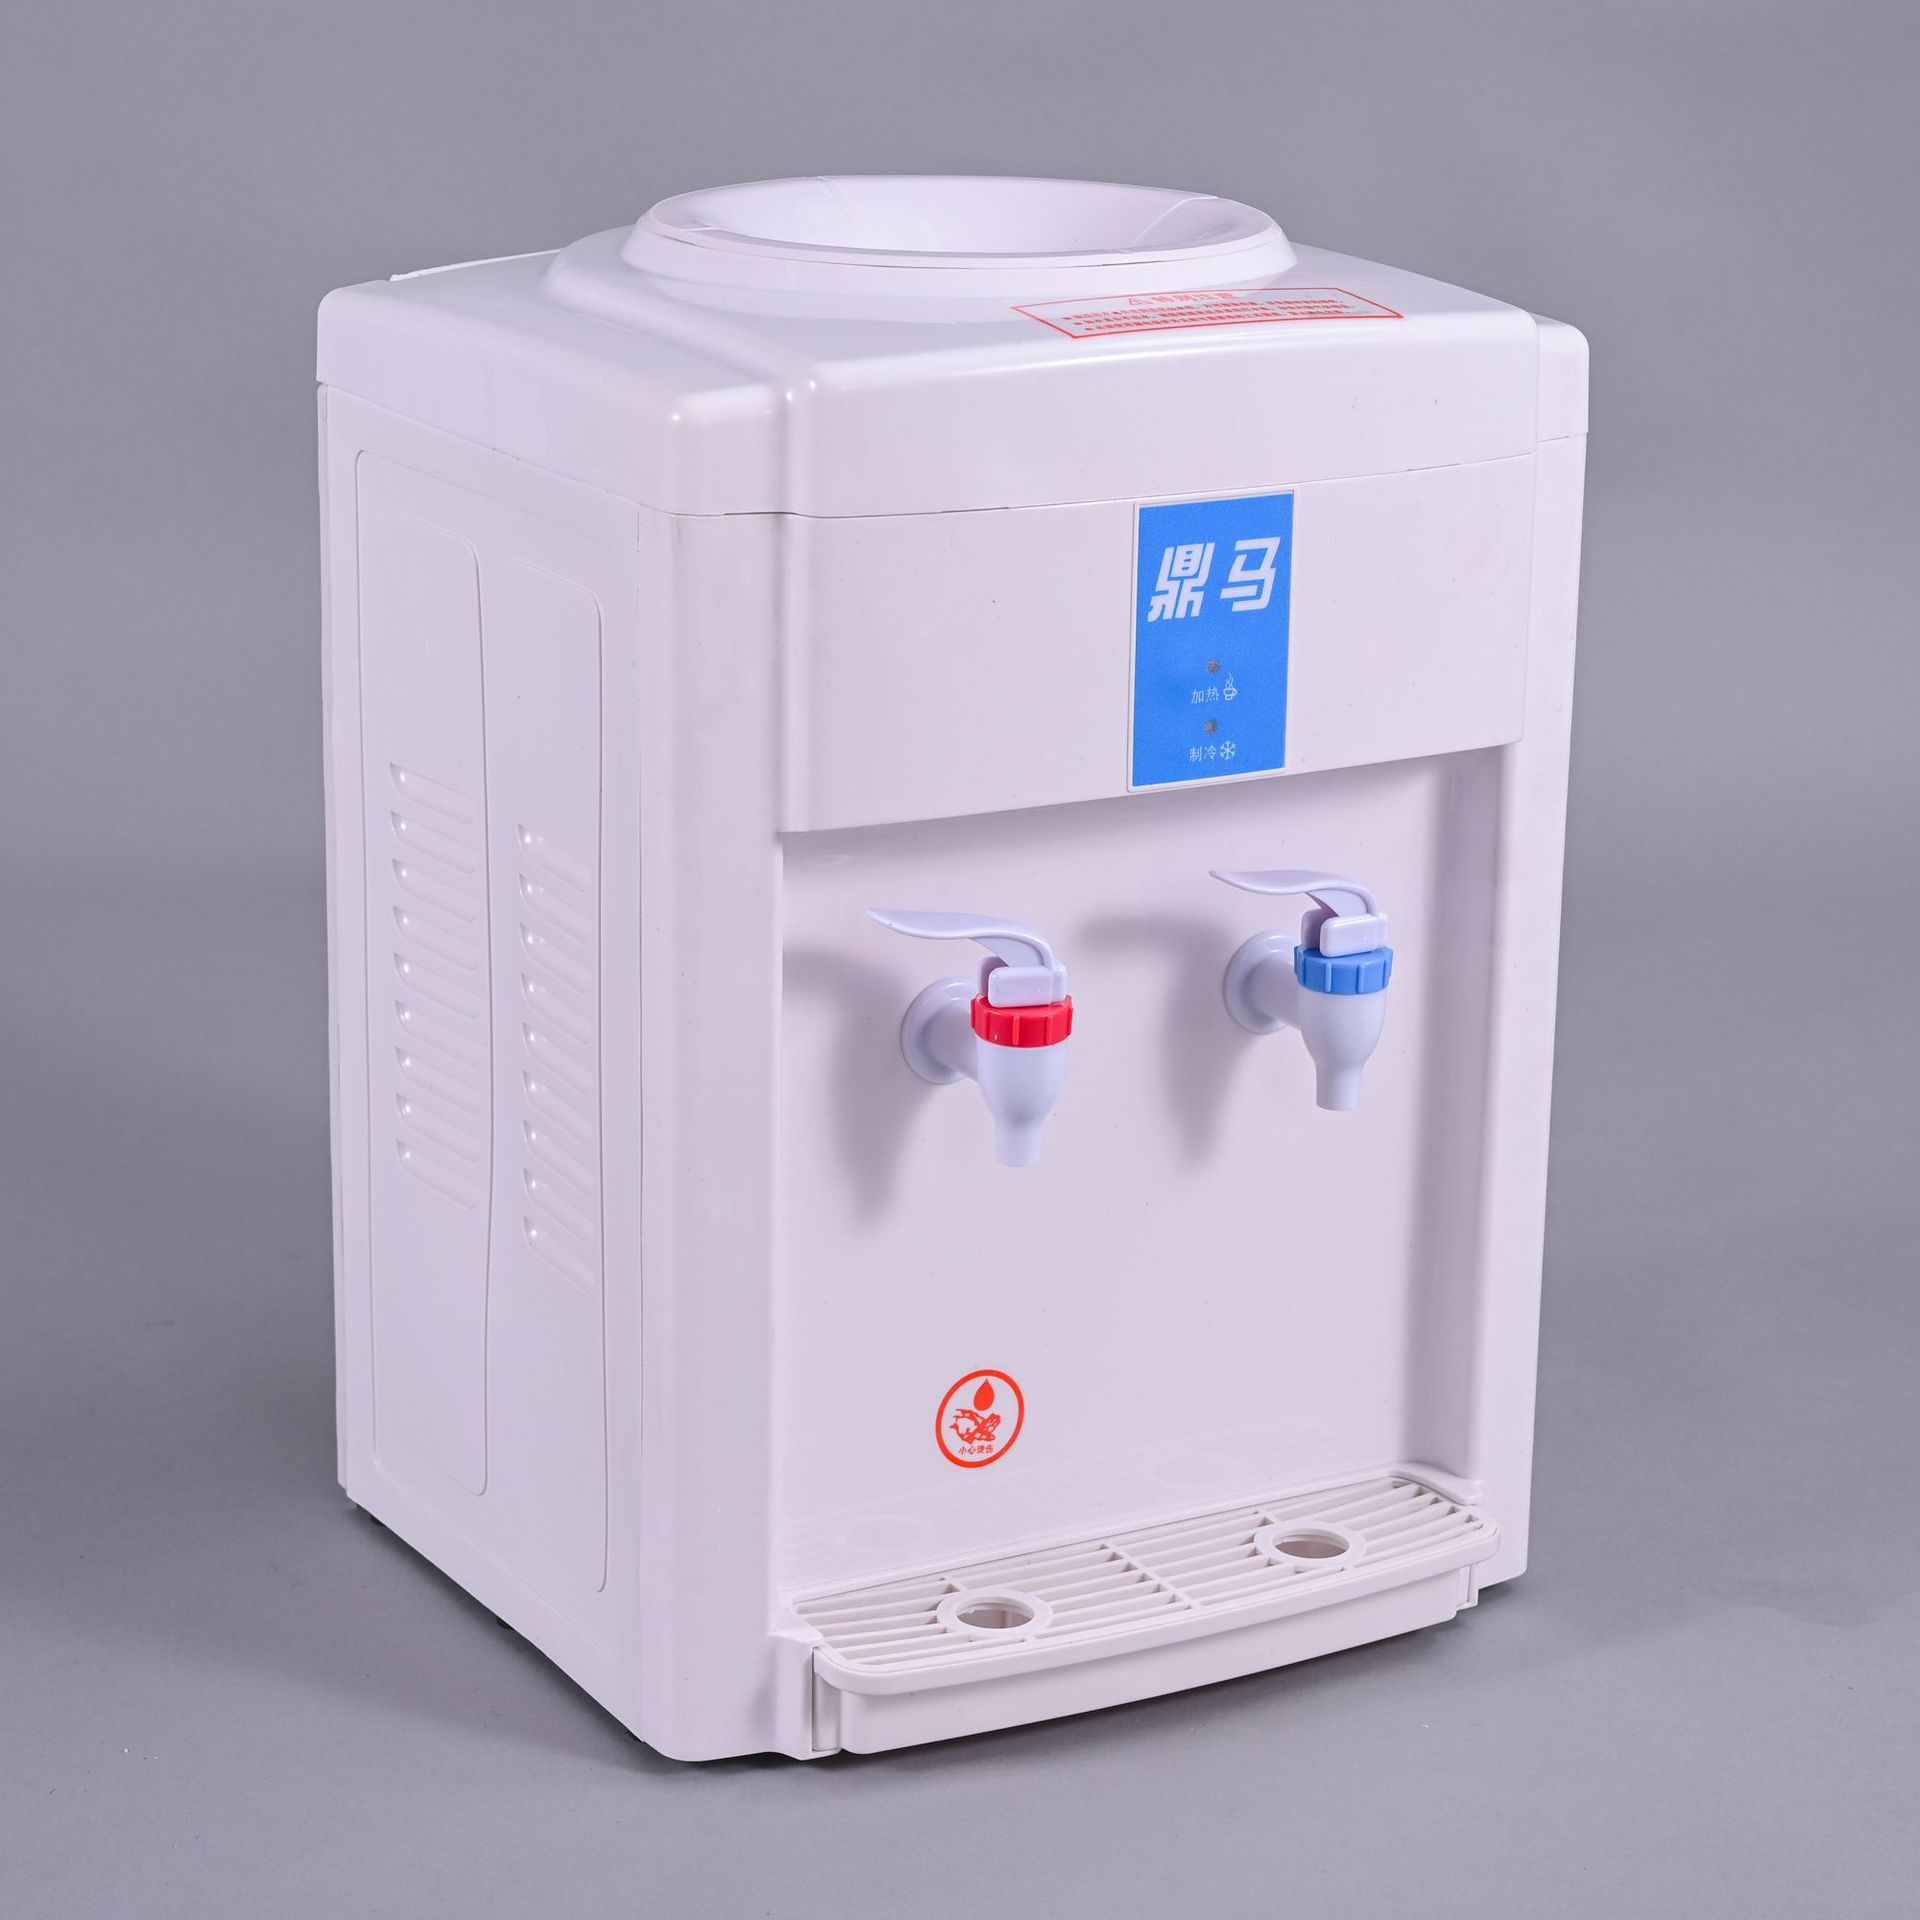 台式饮水机 冷热型节能电器 多功能家用饮水机厂家现货批发